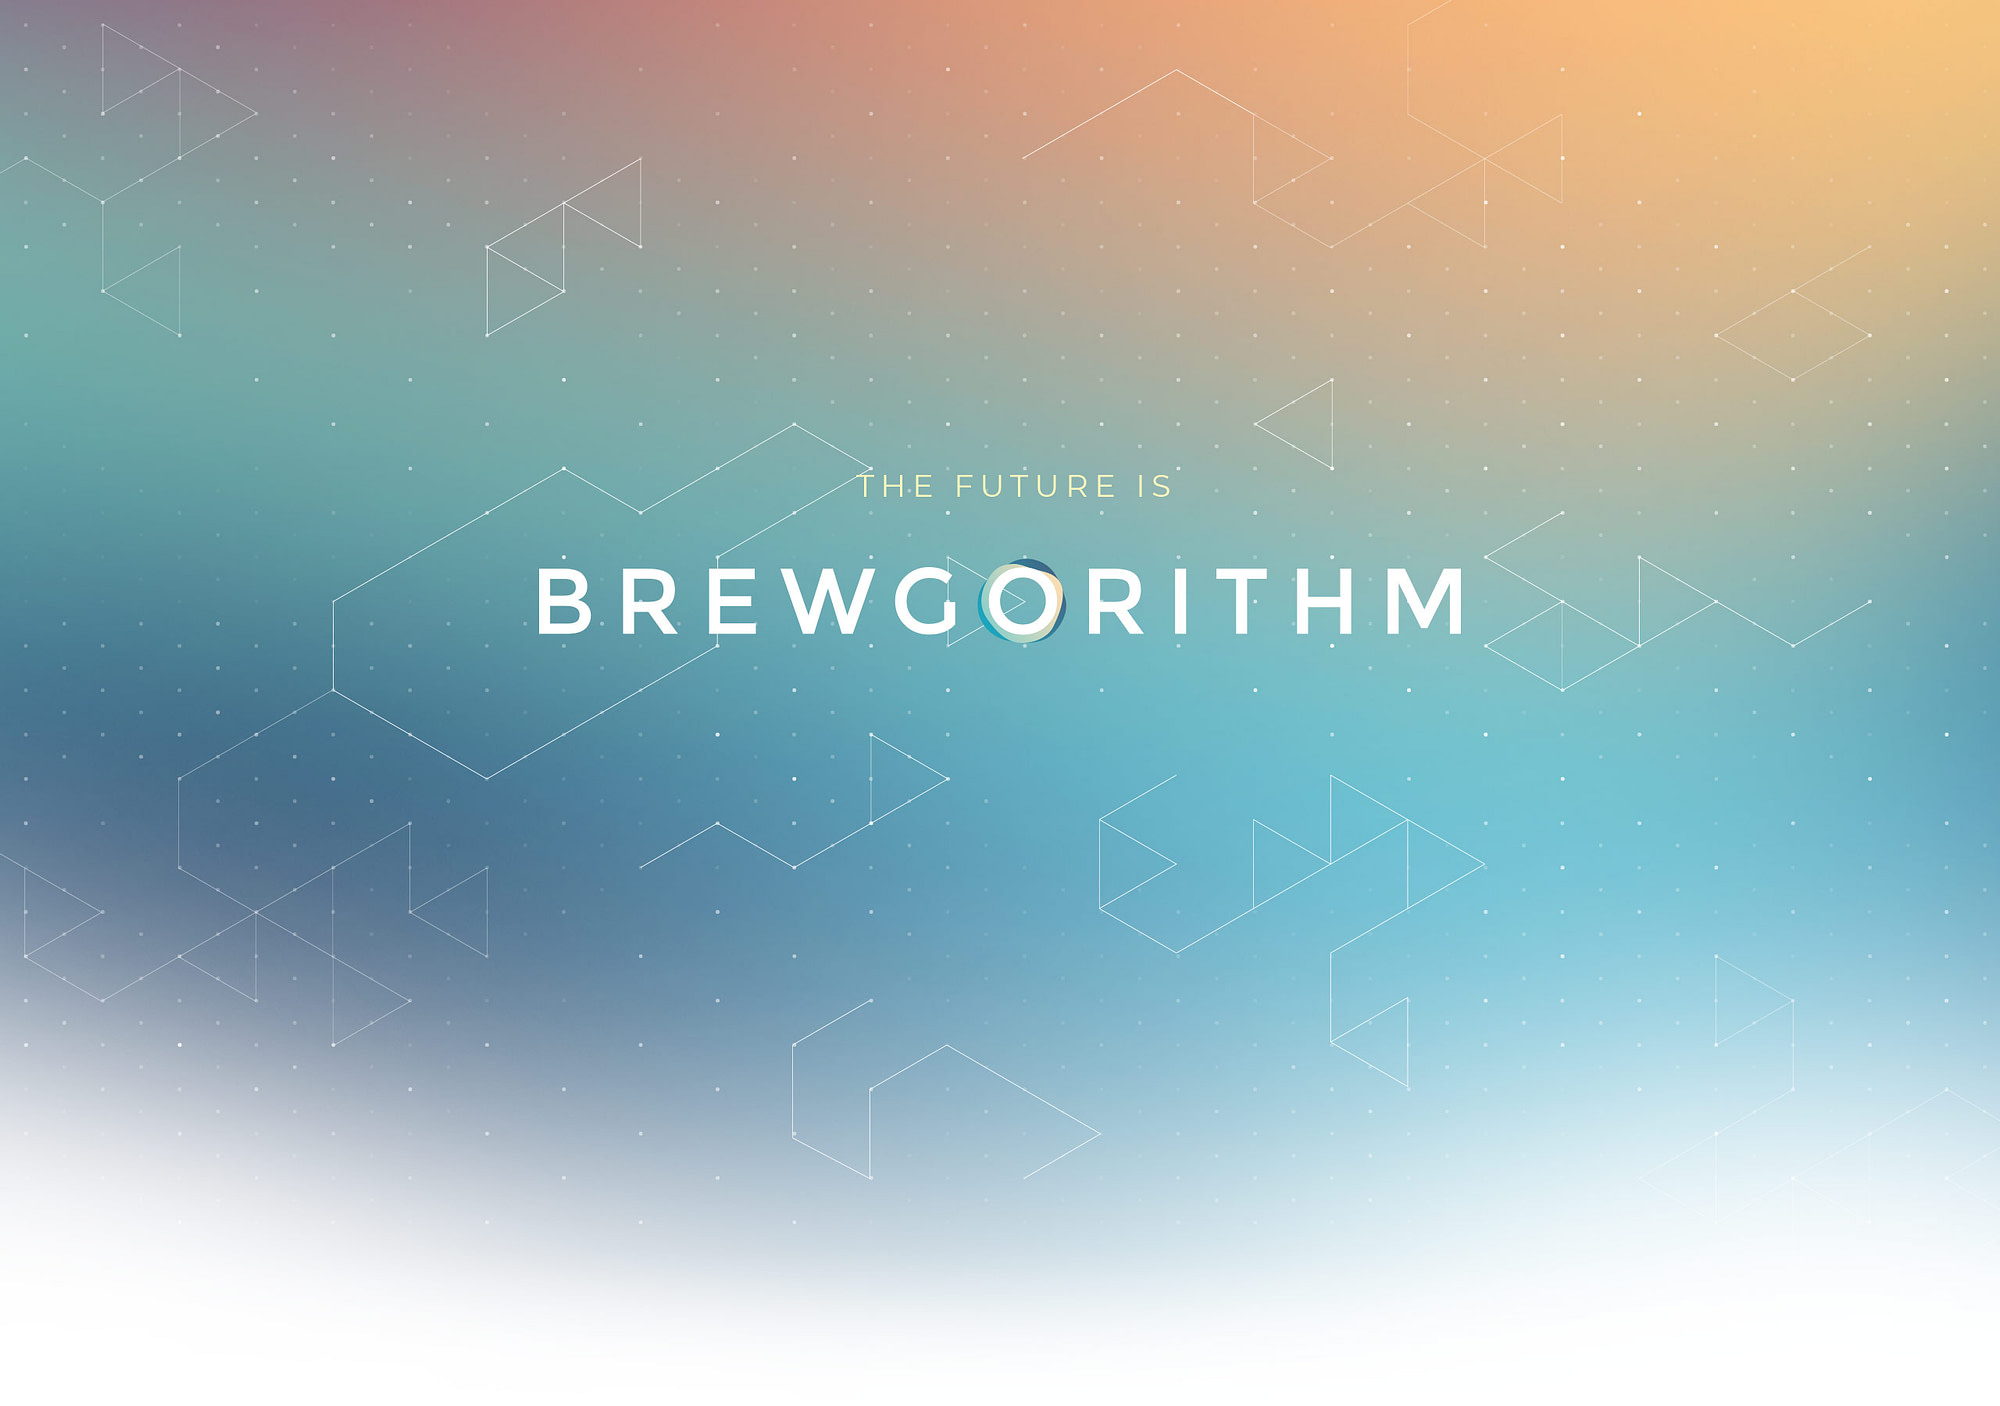 meng-he-brewgorithm-header